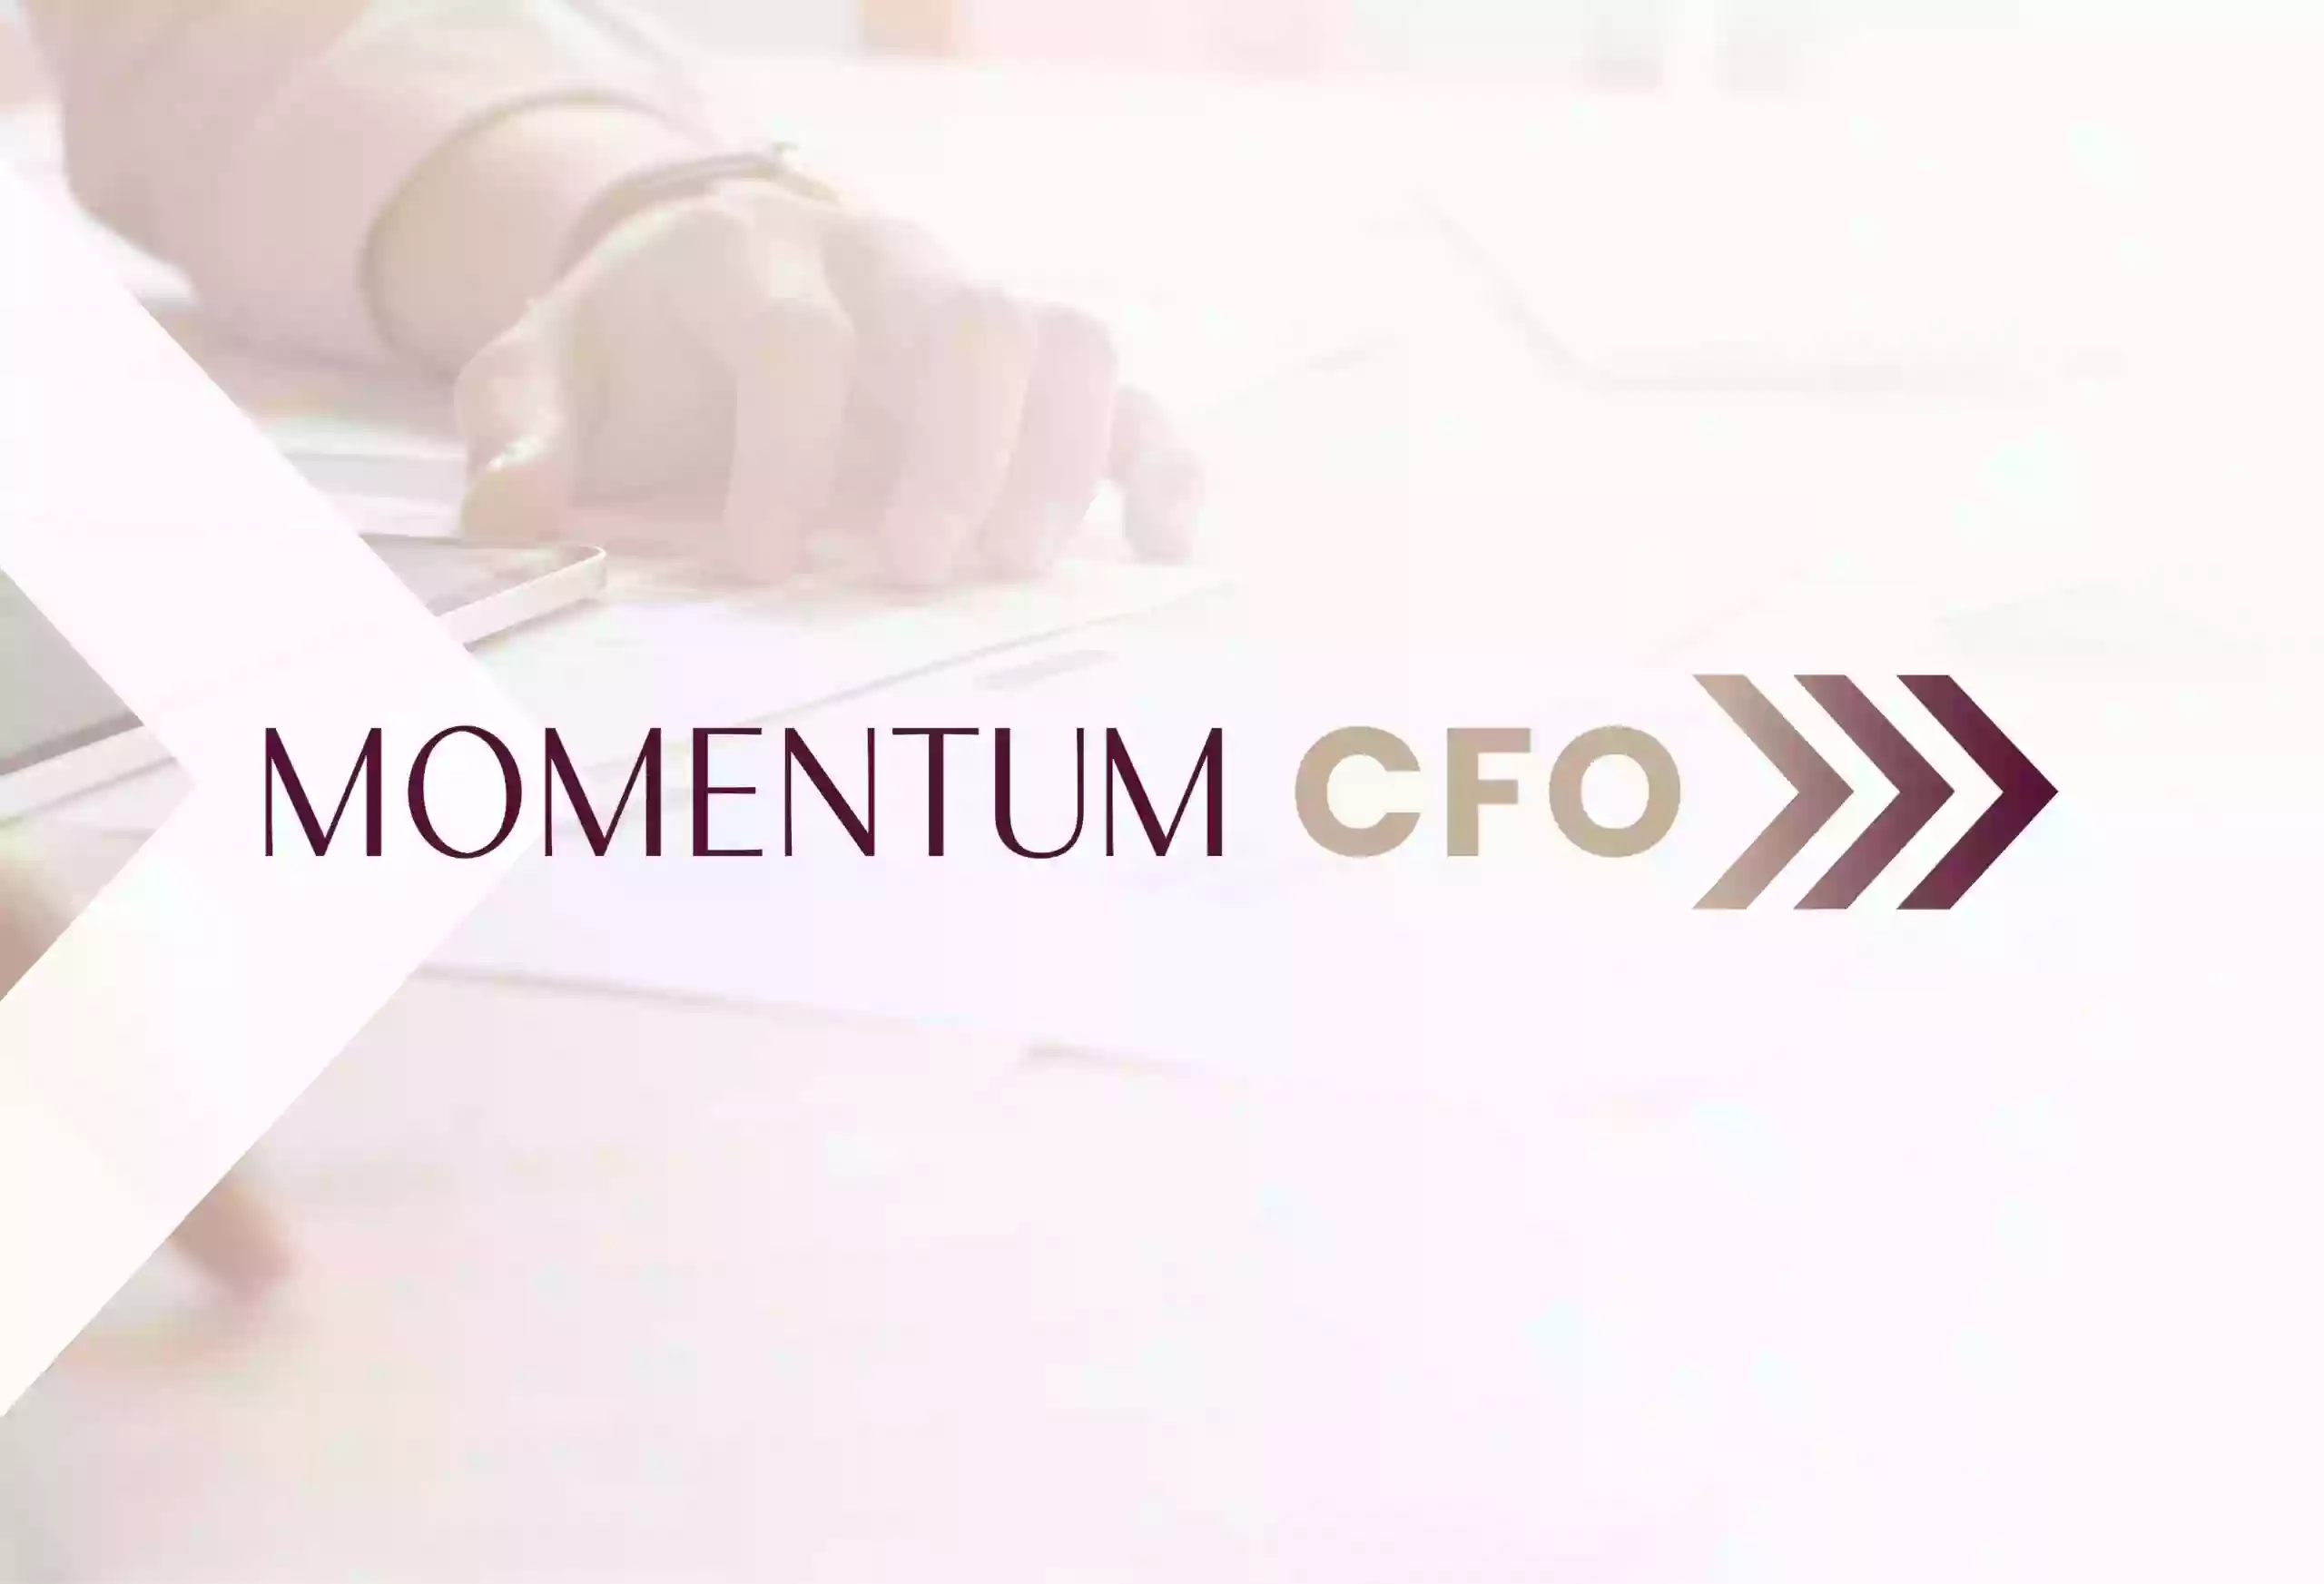 Momentum CFO